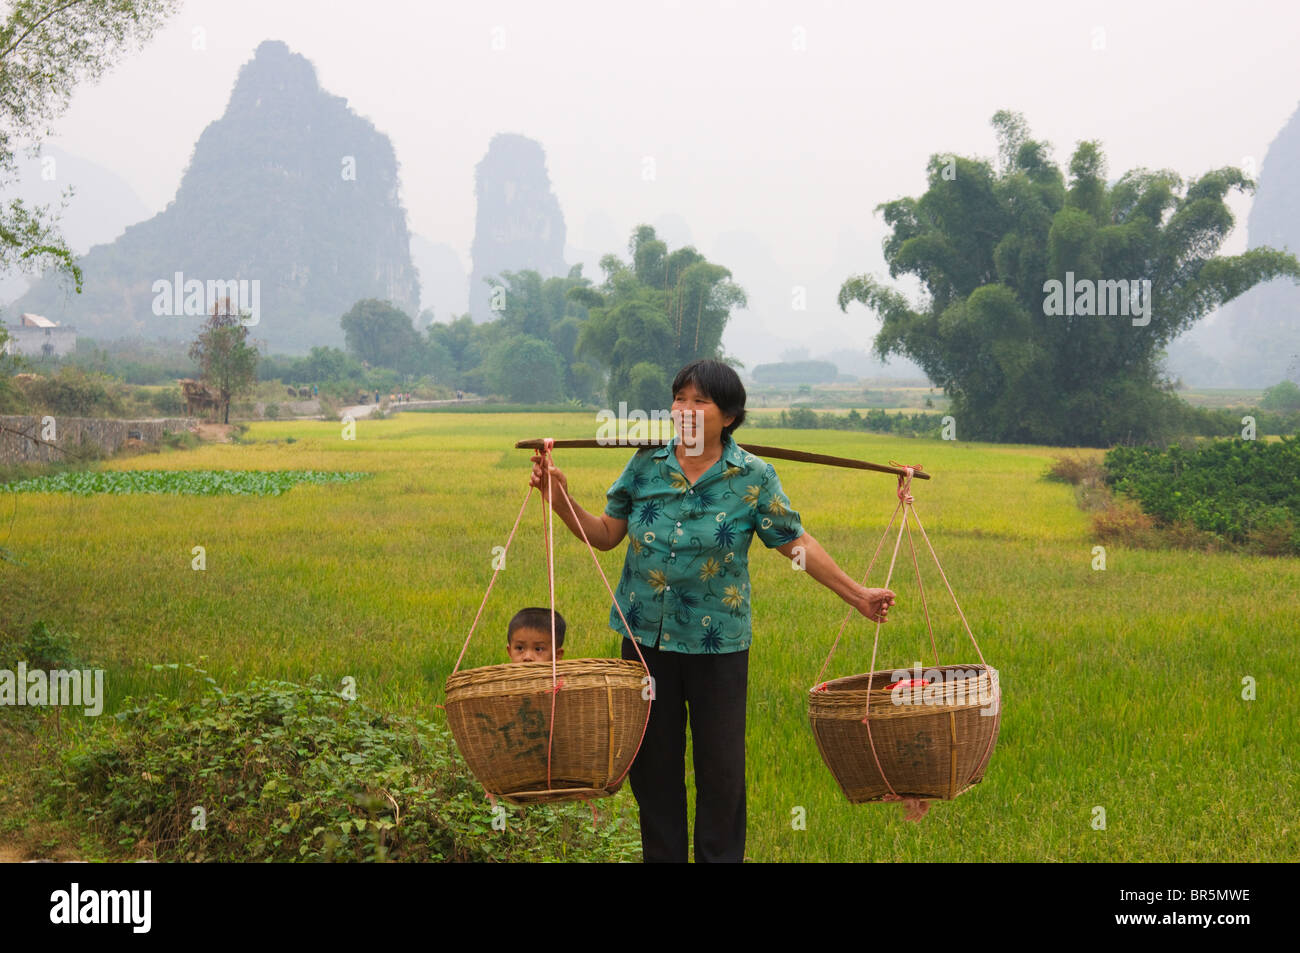 Woman carring child in basket using shoulder pole, Yangshuo, Guangxi, China Stock Photo